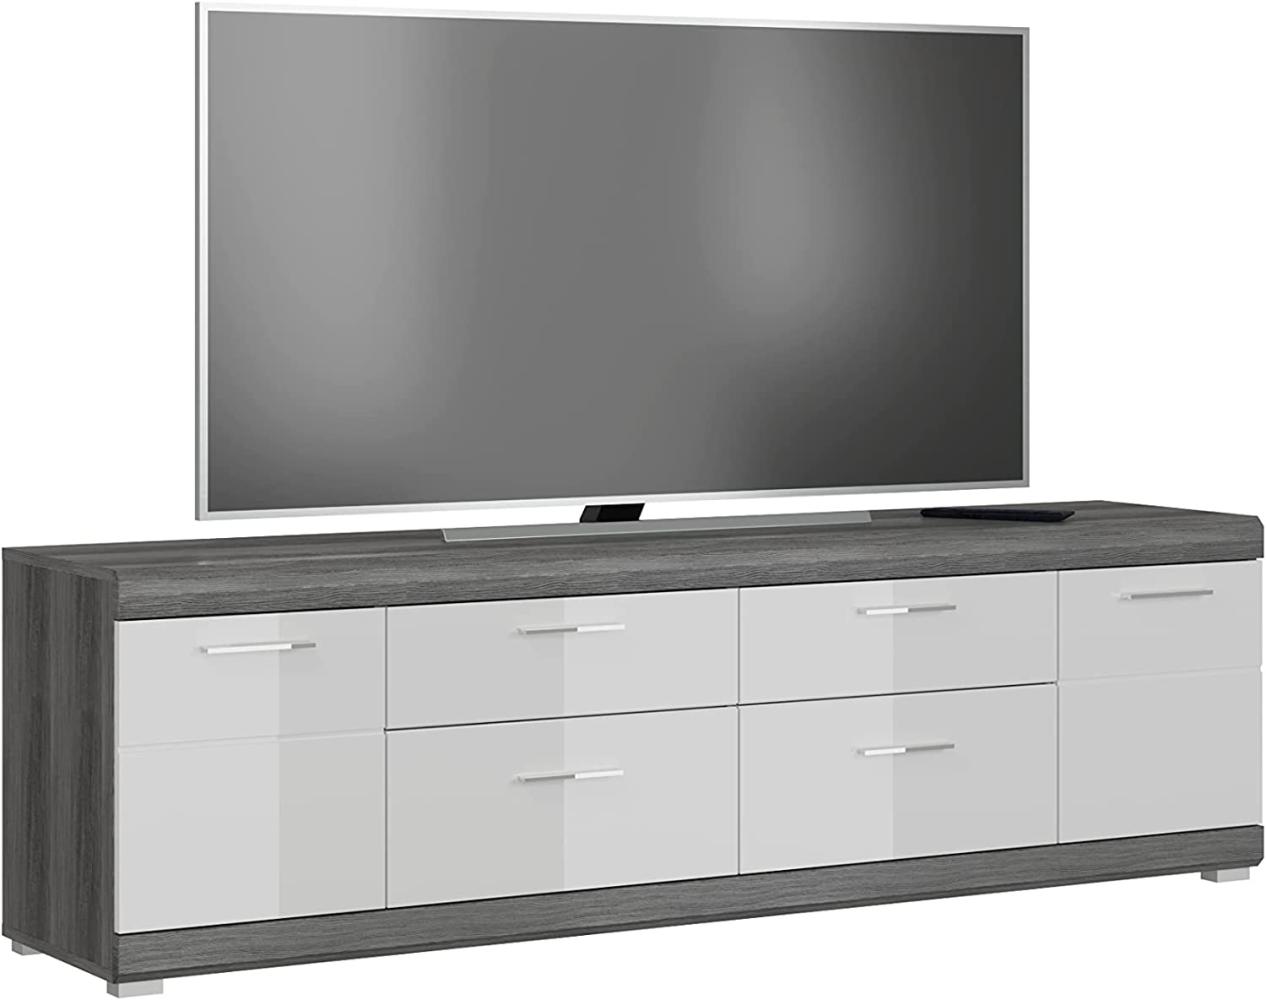 TV-Board >Sandusky< in rauchsilber/weiß hochglanz - 180x53x40cm (BxHxT) Bild 1